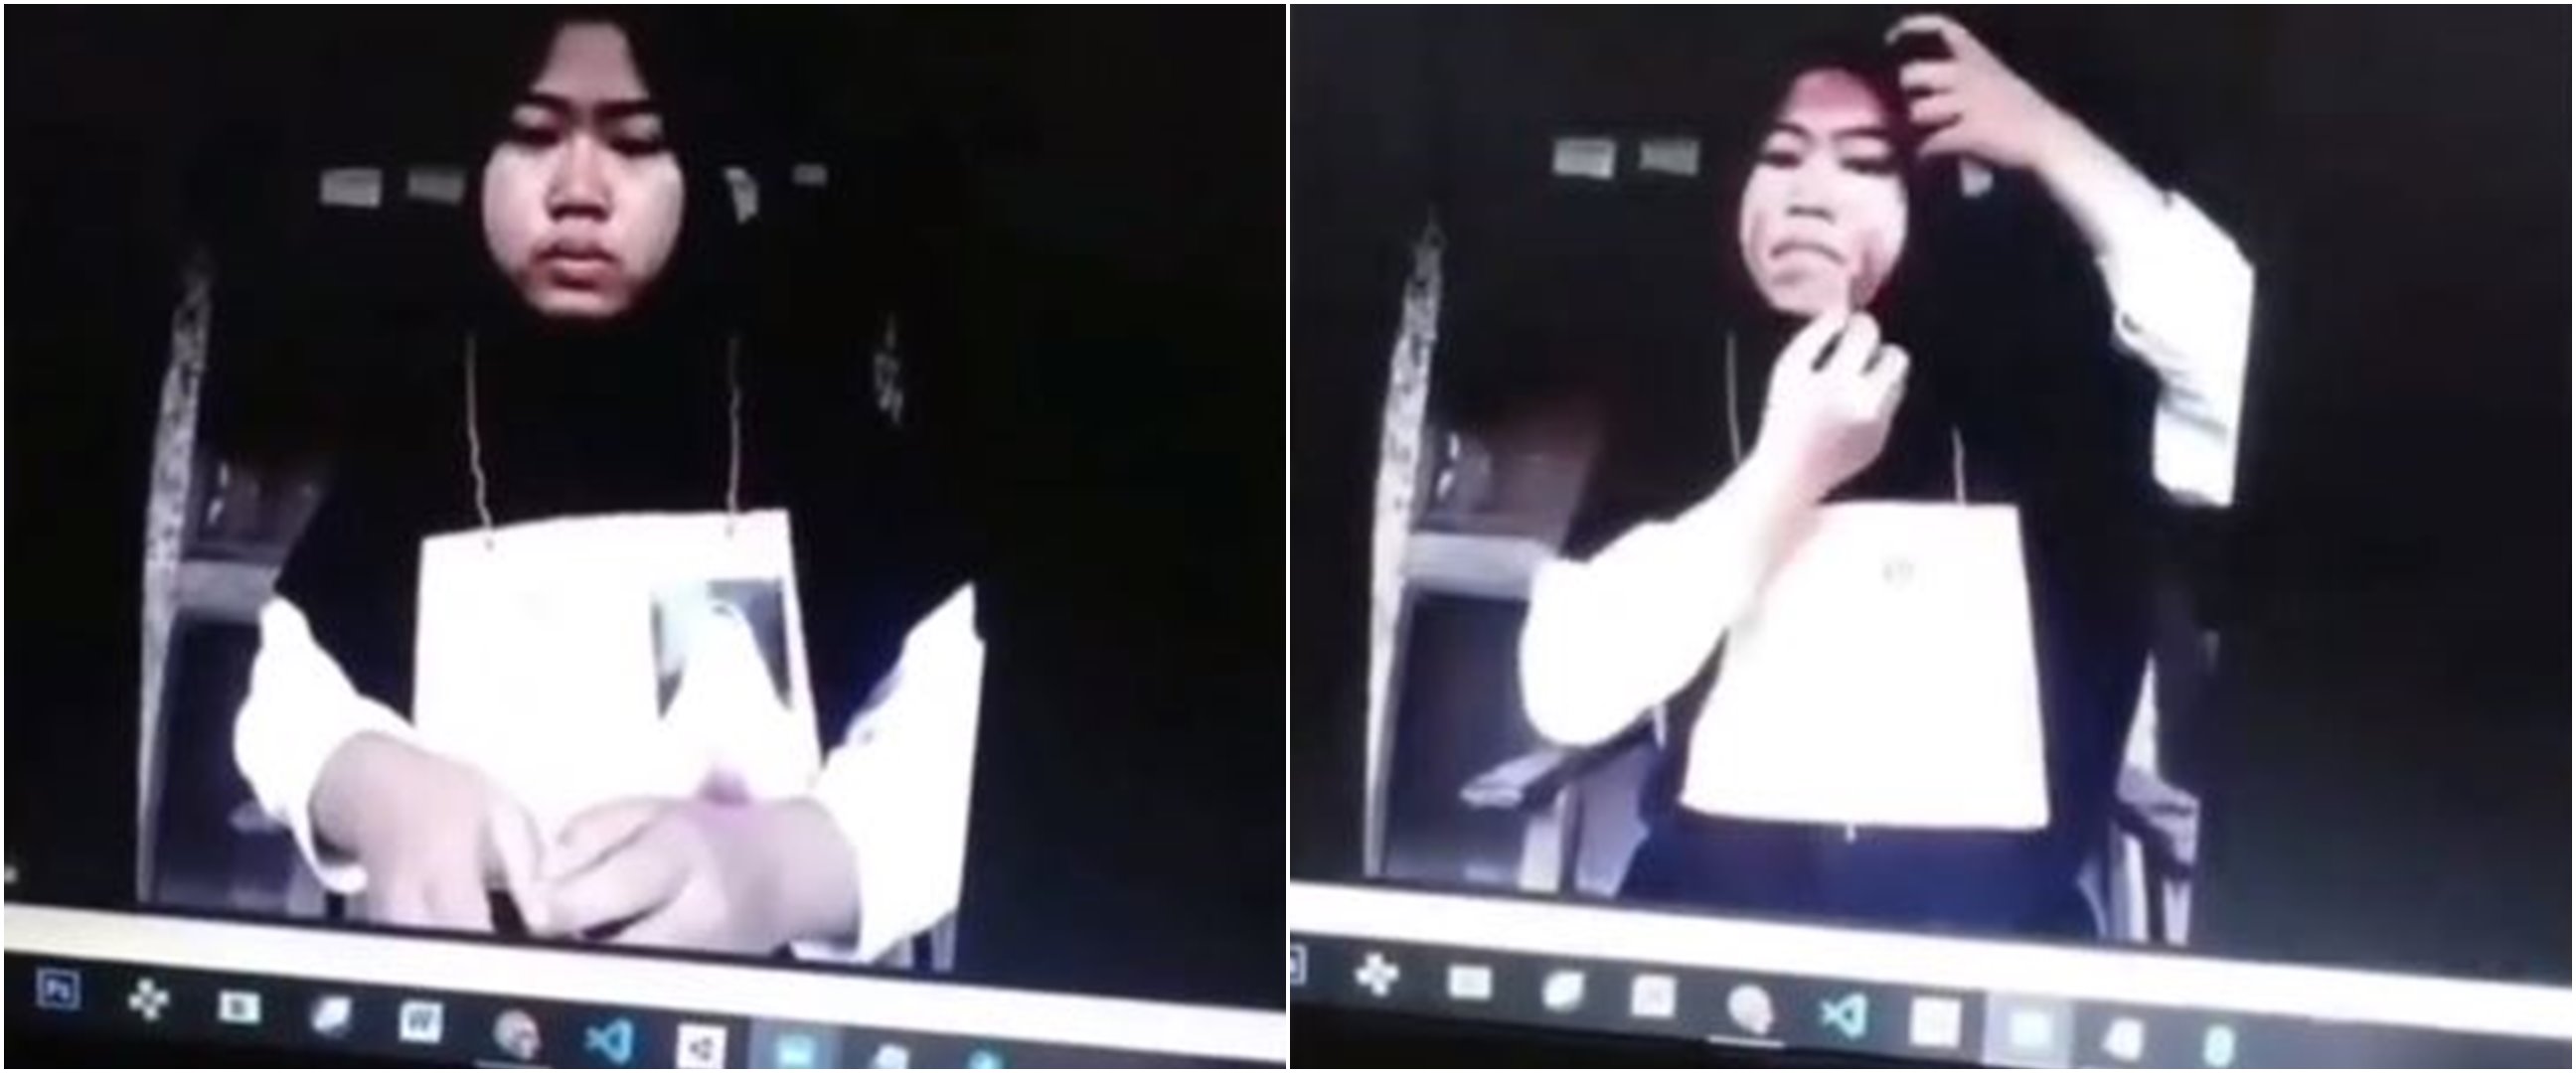 Viral ospek online mahasiswa baru dibentak dan diminta coret wajah